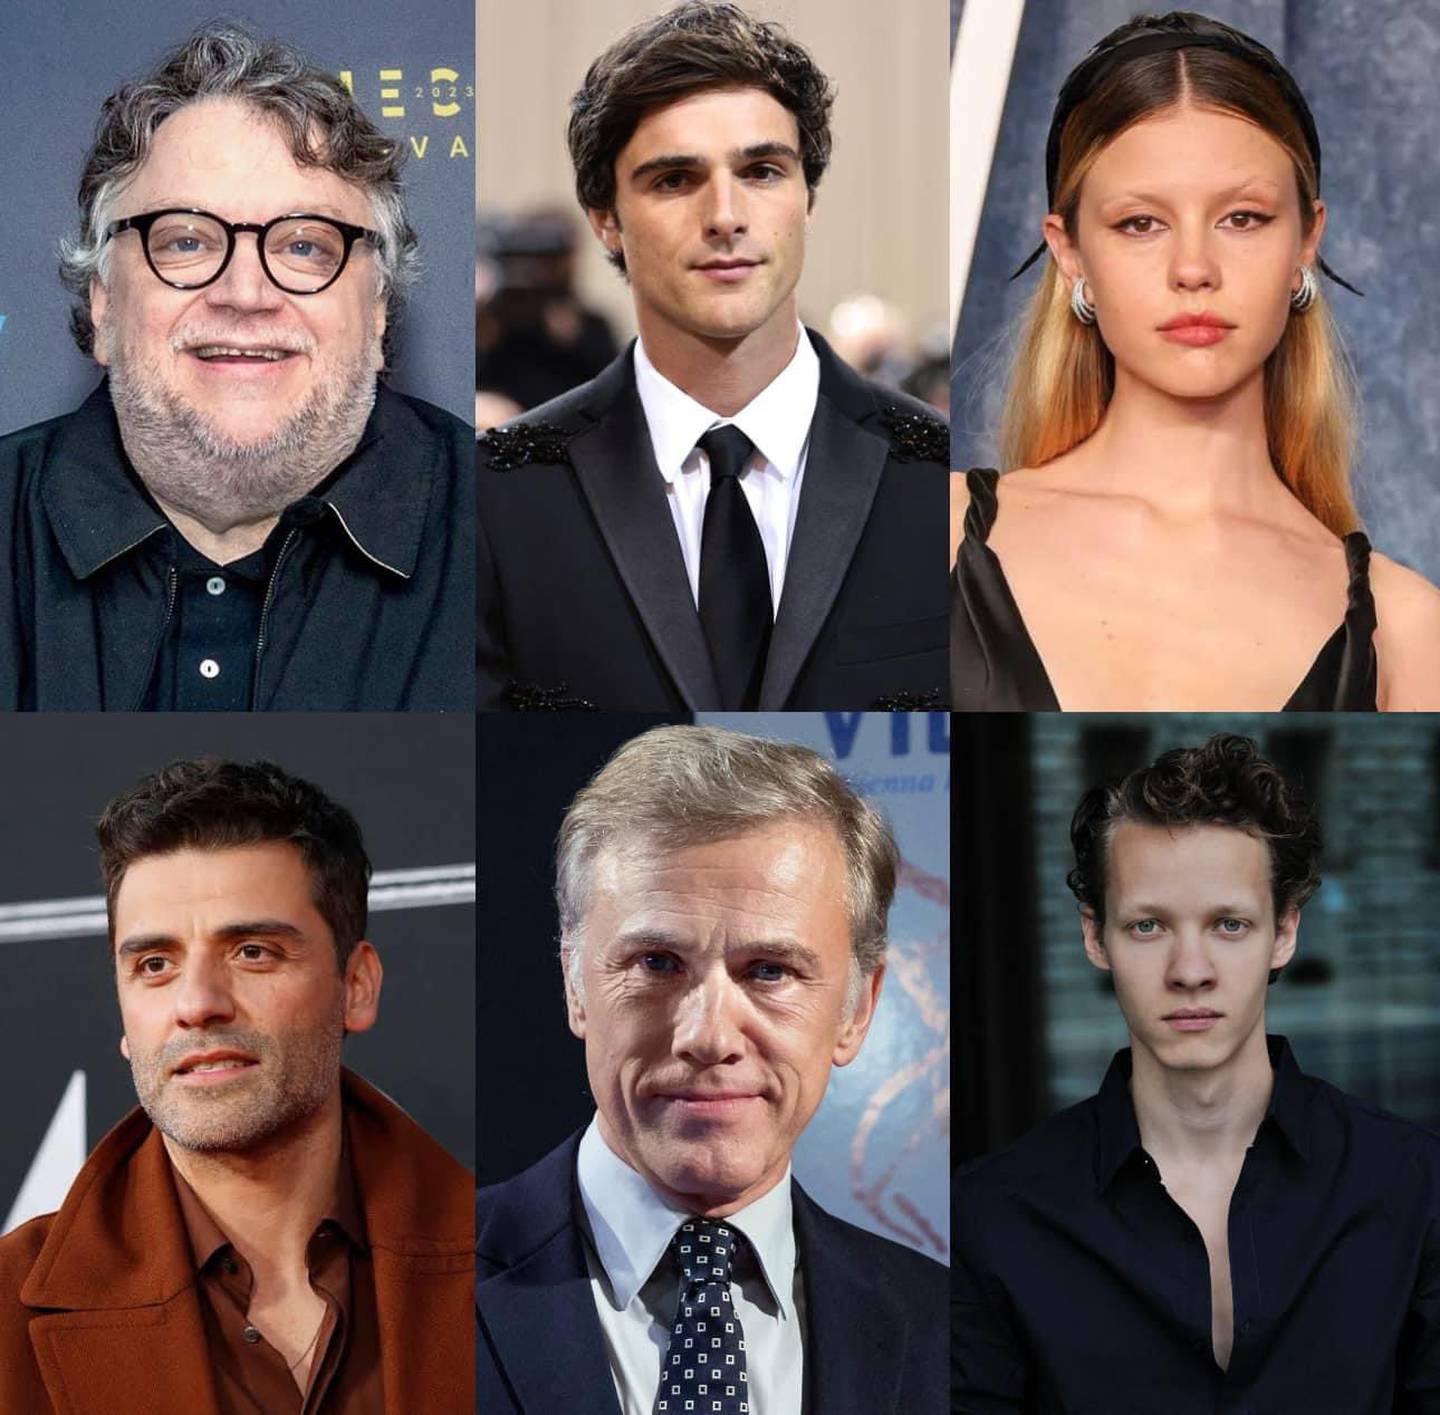 Jacob Elordi protagonizará nueva película de Guillermo del Toro,Frankenstein